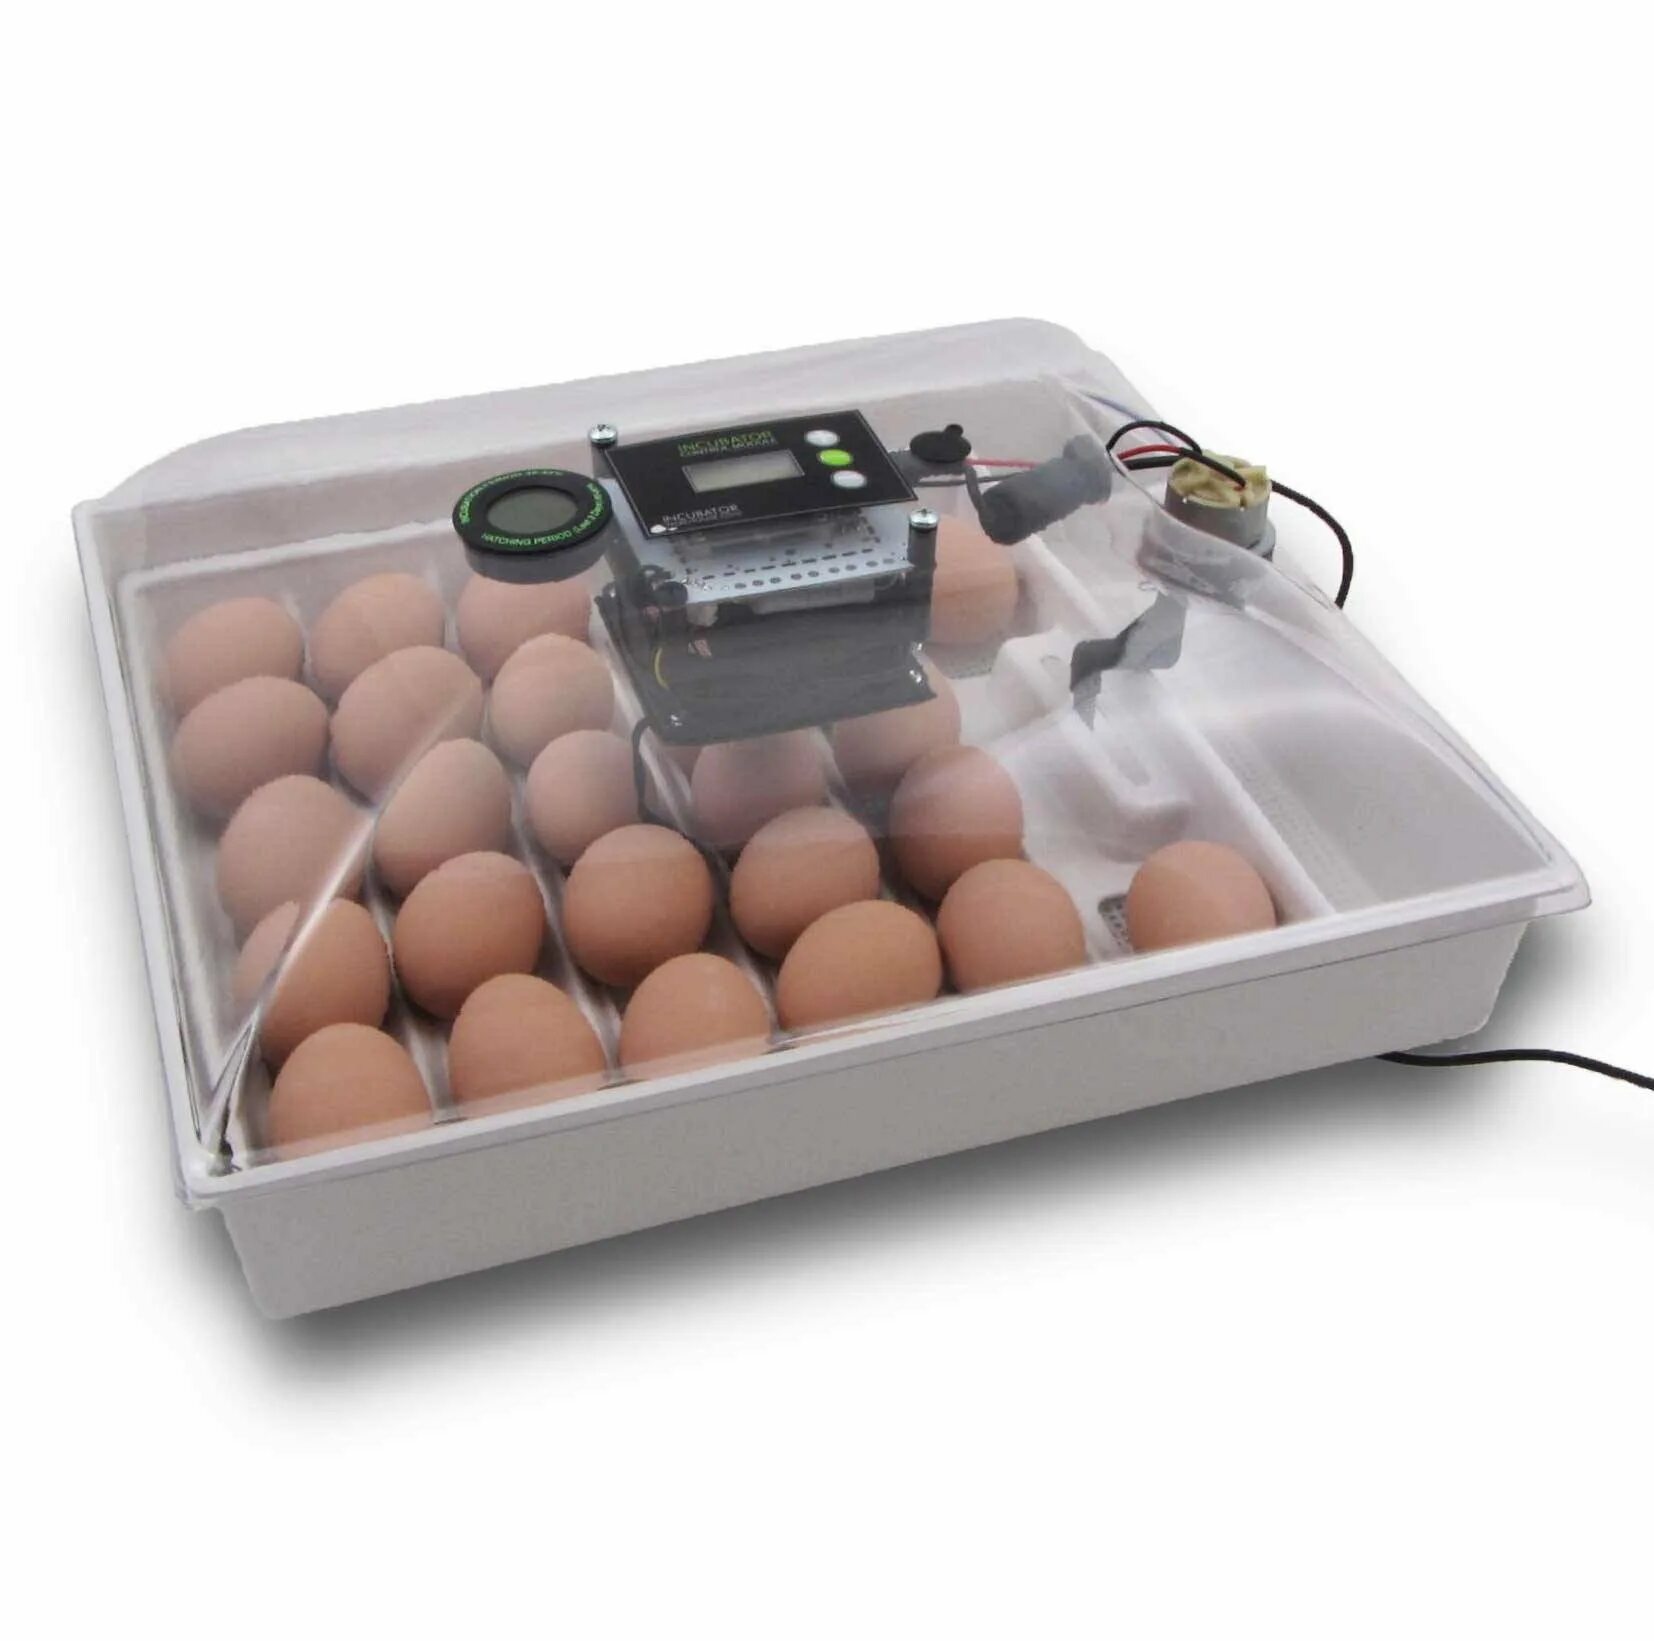 Домашний инкубатор автоматический. Инкубатор Egg incubator. Инкубатор FLORAFLEX incubator Kit. Инкубатор SITITEK 36. Кв400 binger инкубатор для яиц.